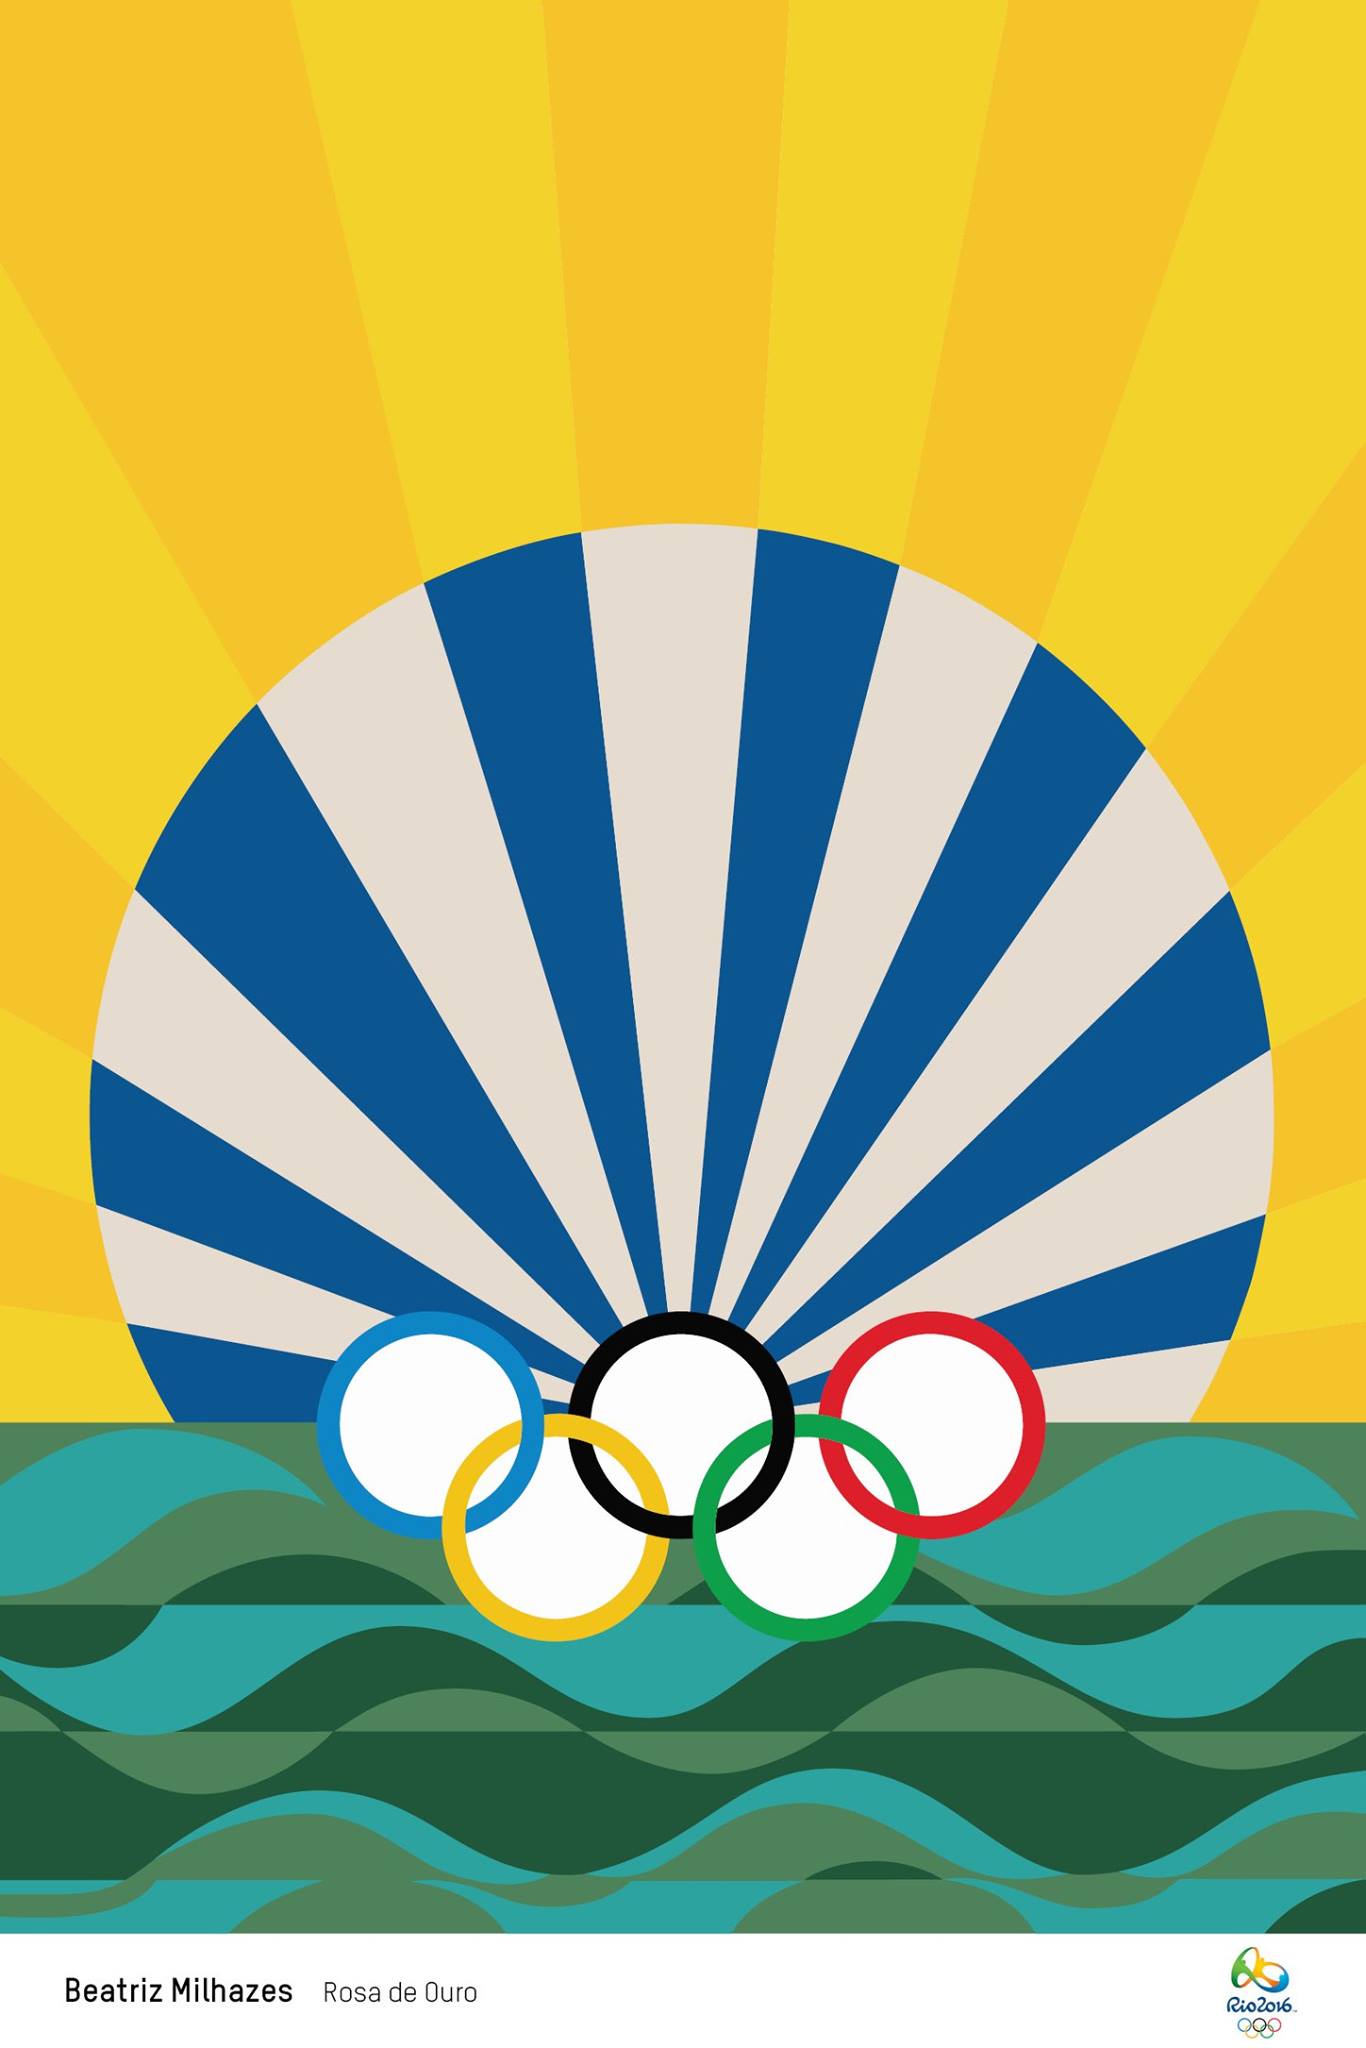 Плакат олимпийские игры. Логотип Олимпийских игр 2016. Игры олимпиады плакат. Логотип для Олимпийских летних игр 2016 года в Рио-де-Жанейро.